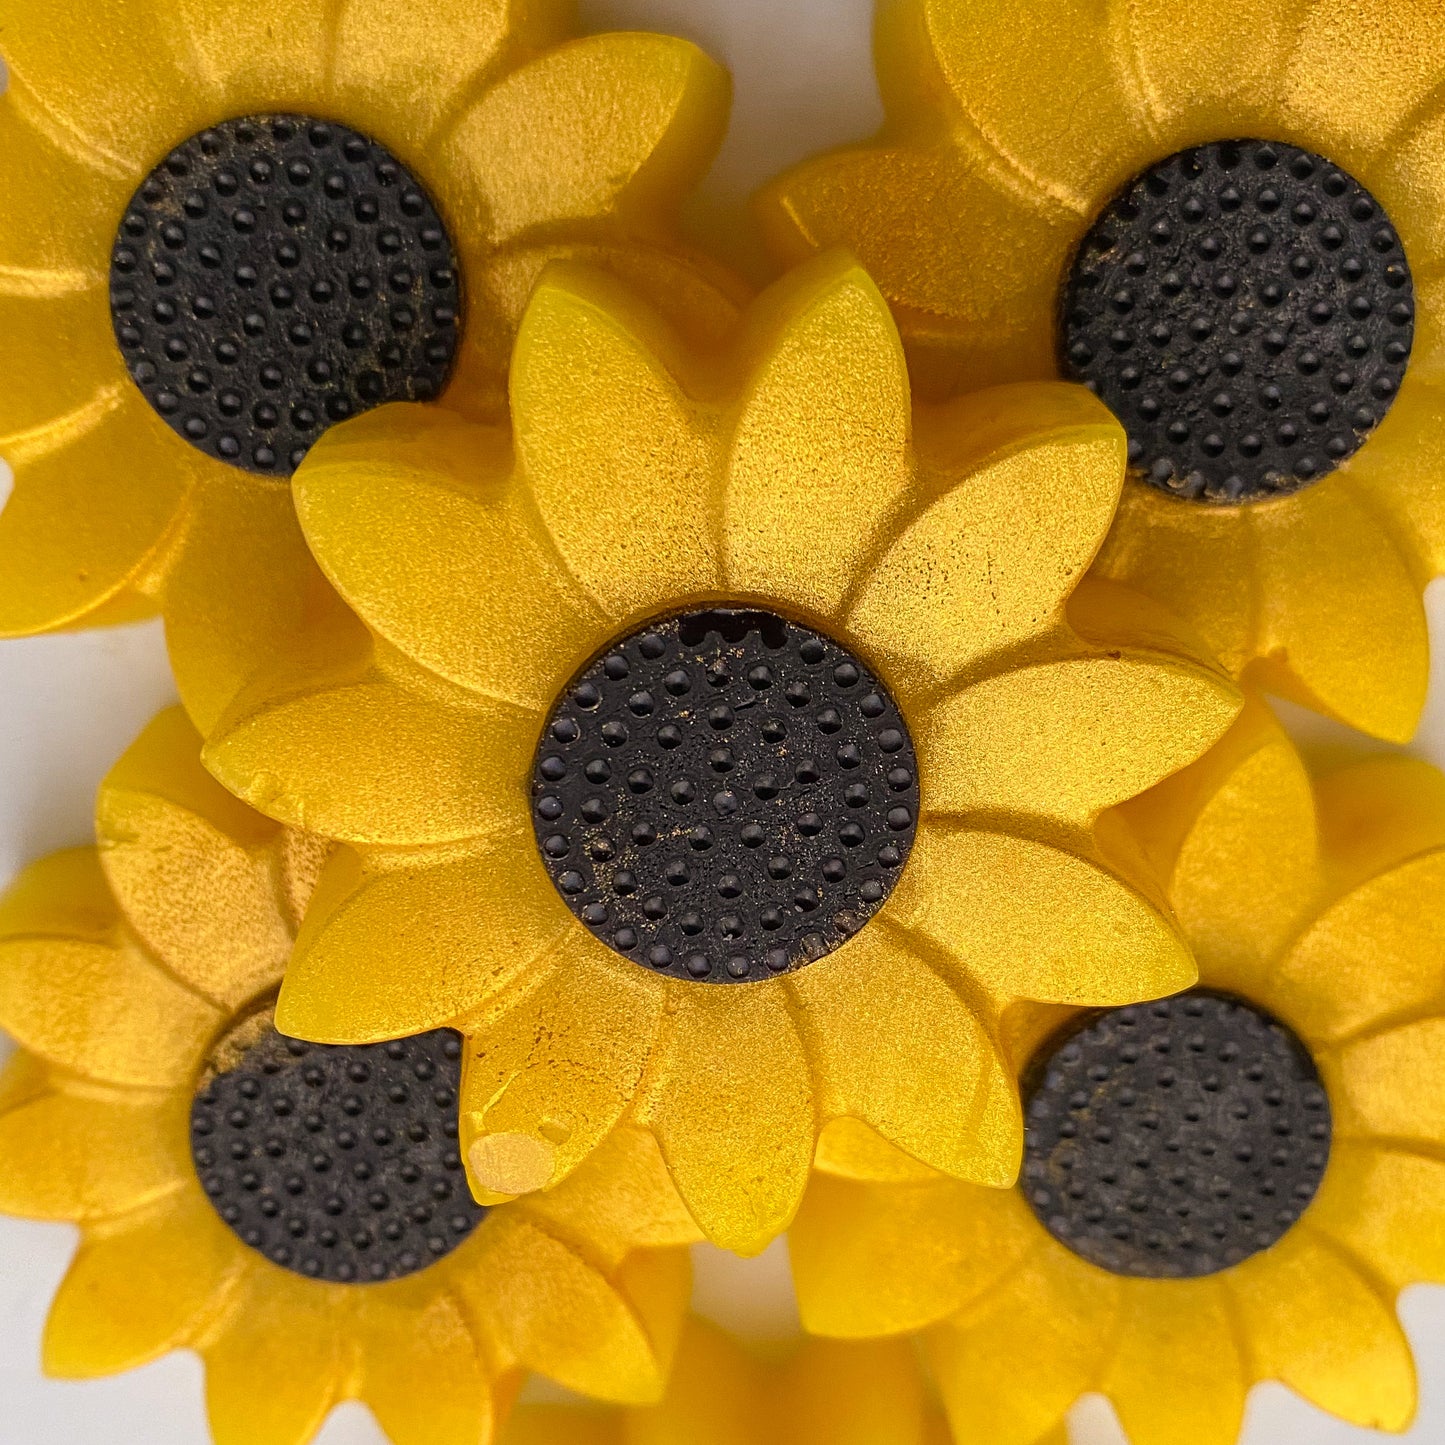 Sunflower Wax Melts